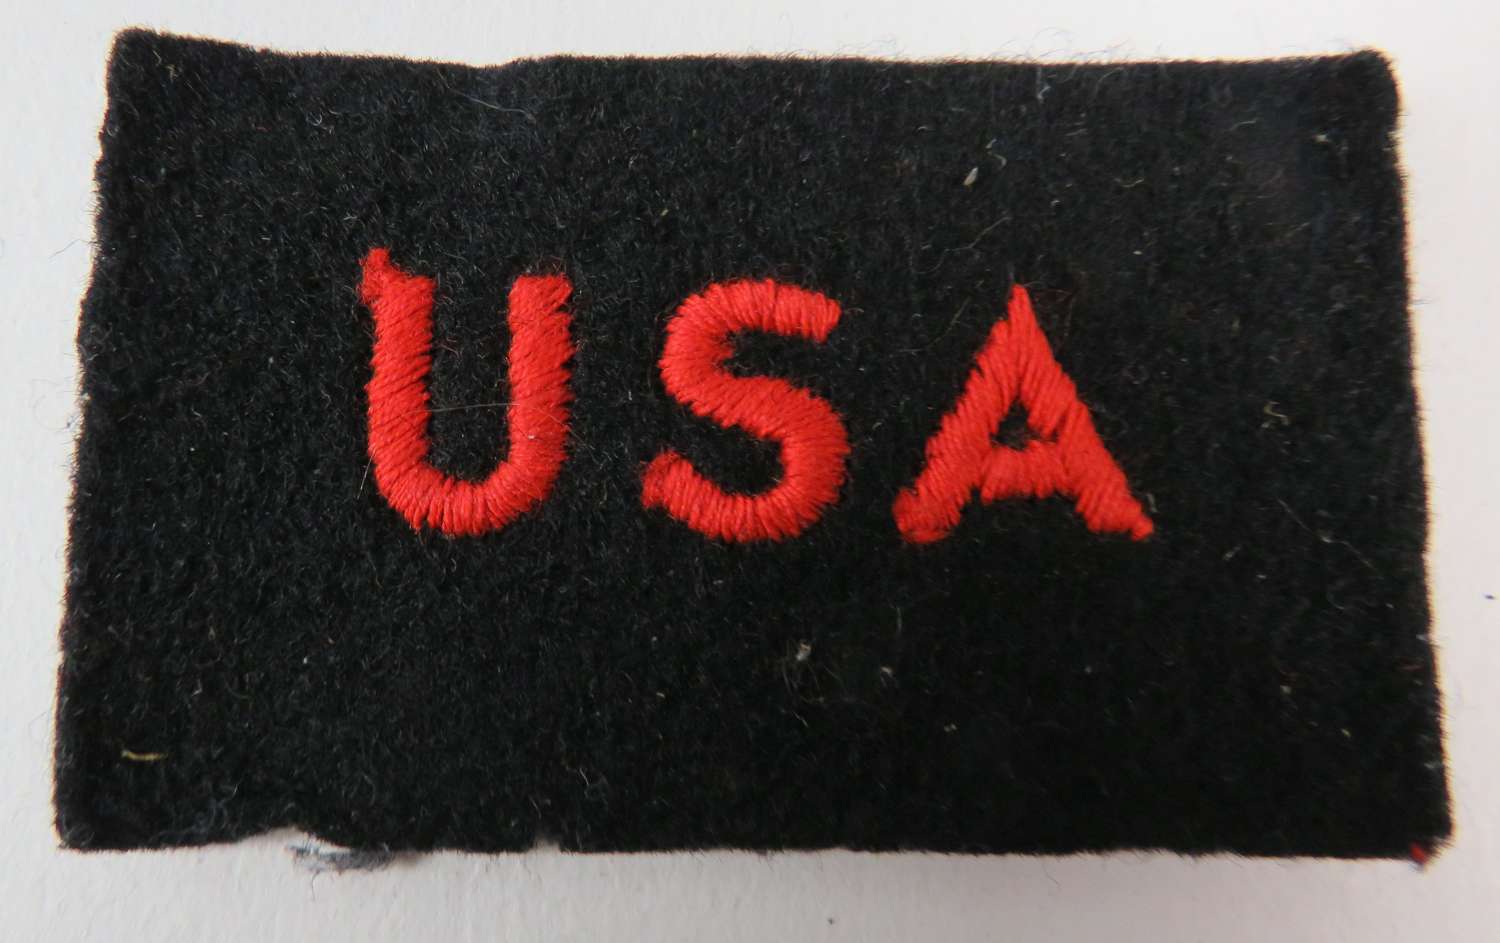 U.S.A Shoulder Title